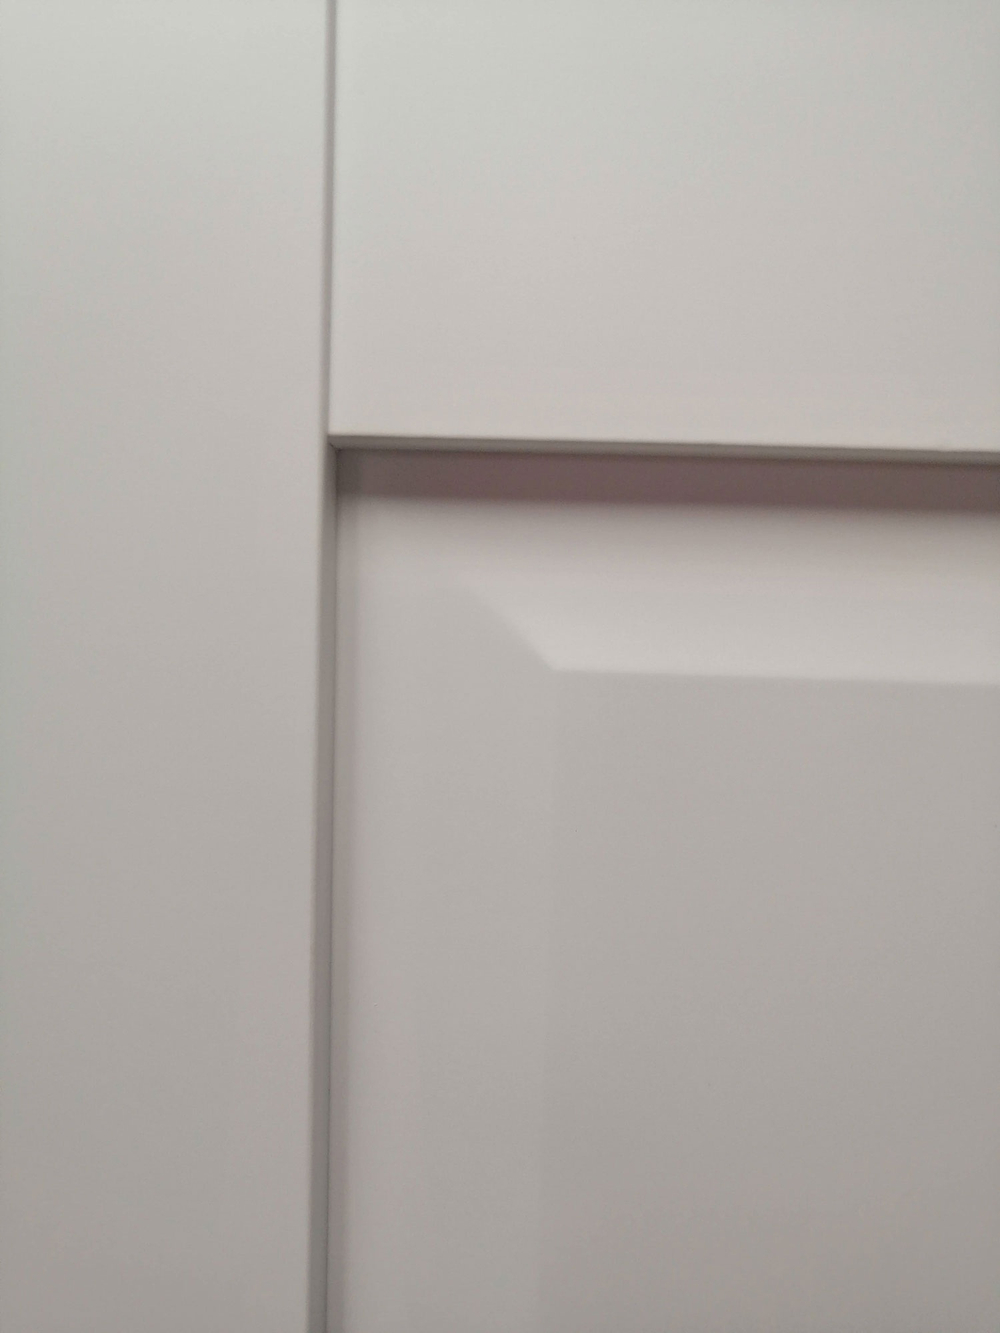 Межкомнатная дверь Браво Прима-10 цвет White Matt ( белый матовый без текстуры)